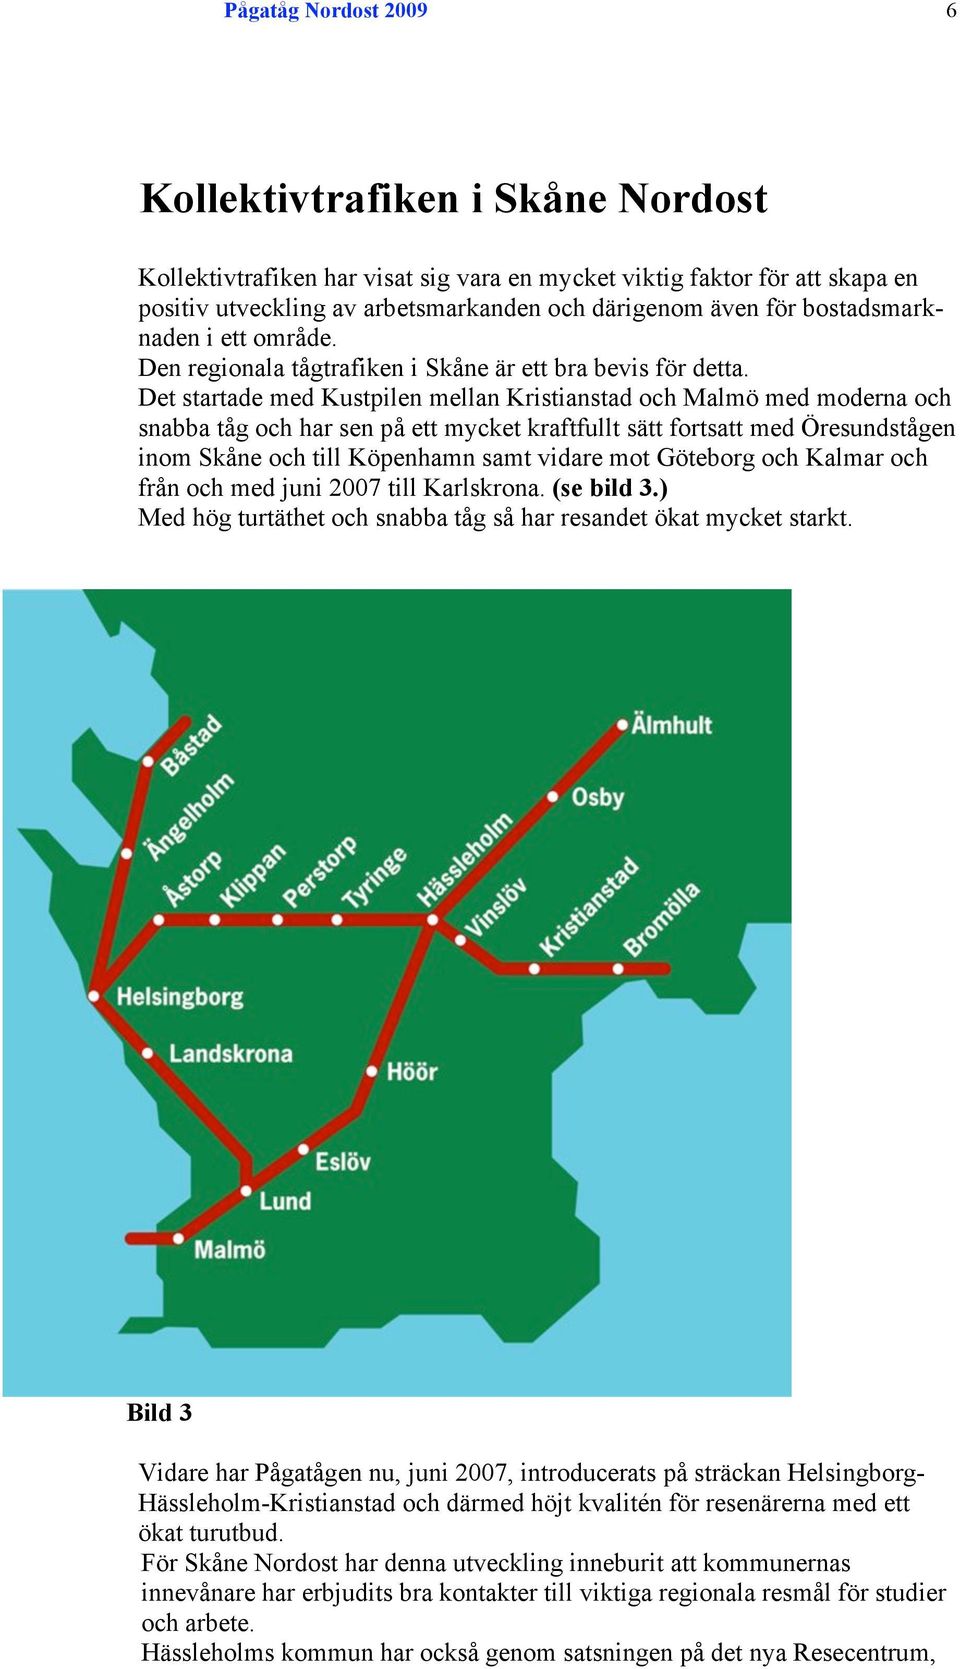 Det startade med Kustpilen mellan Kristianstad och Malmö med moderna och snabba tåg och har sen på ett mycket kraftfullt sätt fortsatt med Öresundstågen inom Skåne och till Köpenhamn samt vidare mot